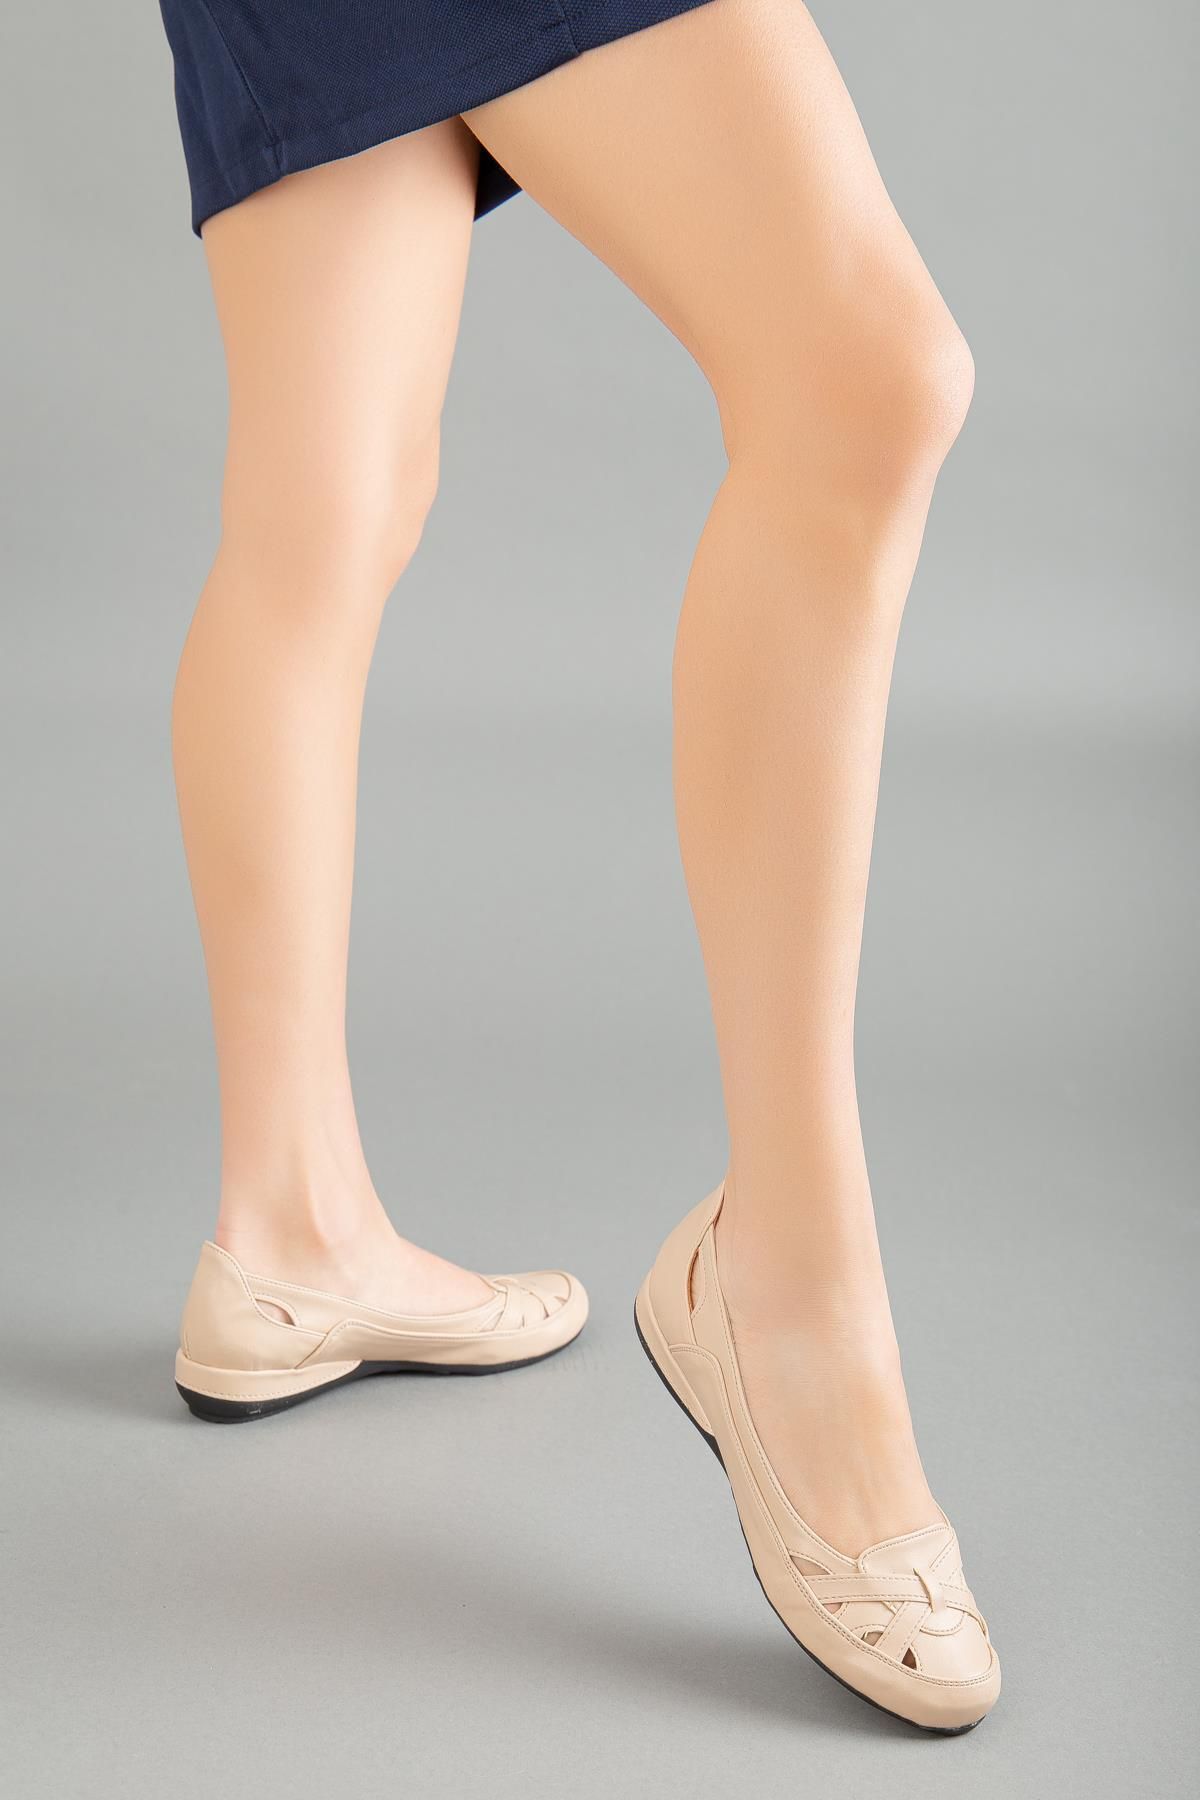 Dilimler Ayakkabı Kafes Model Nude Büyük Numara Kadın Ayakkabısı Günlük